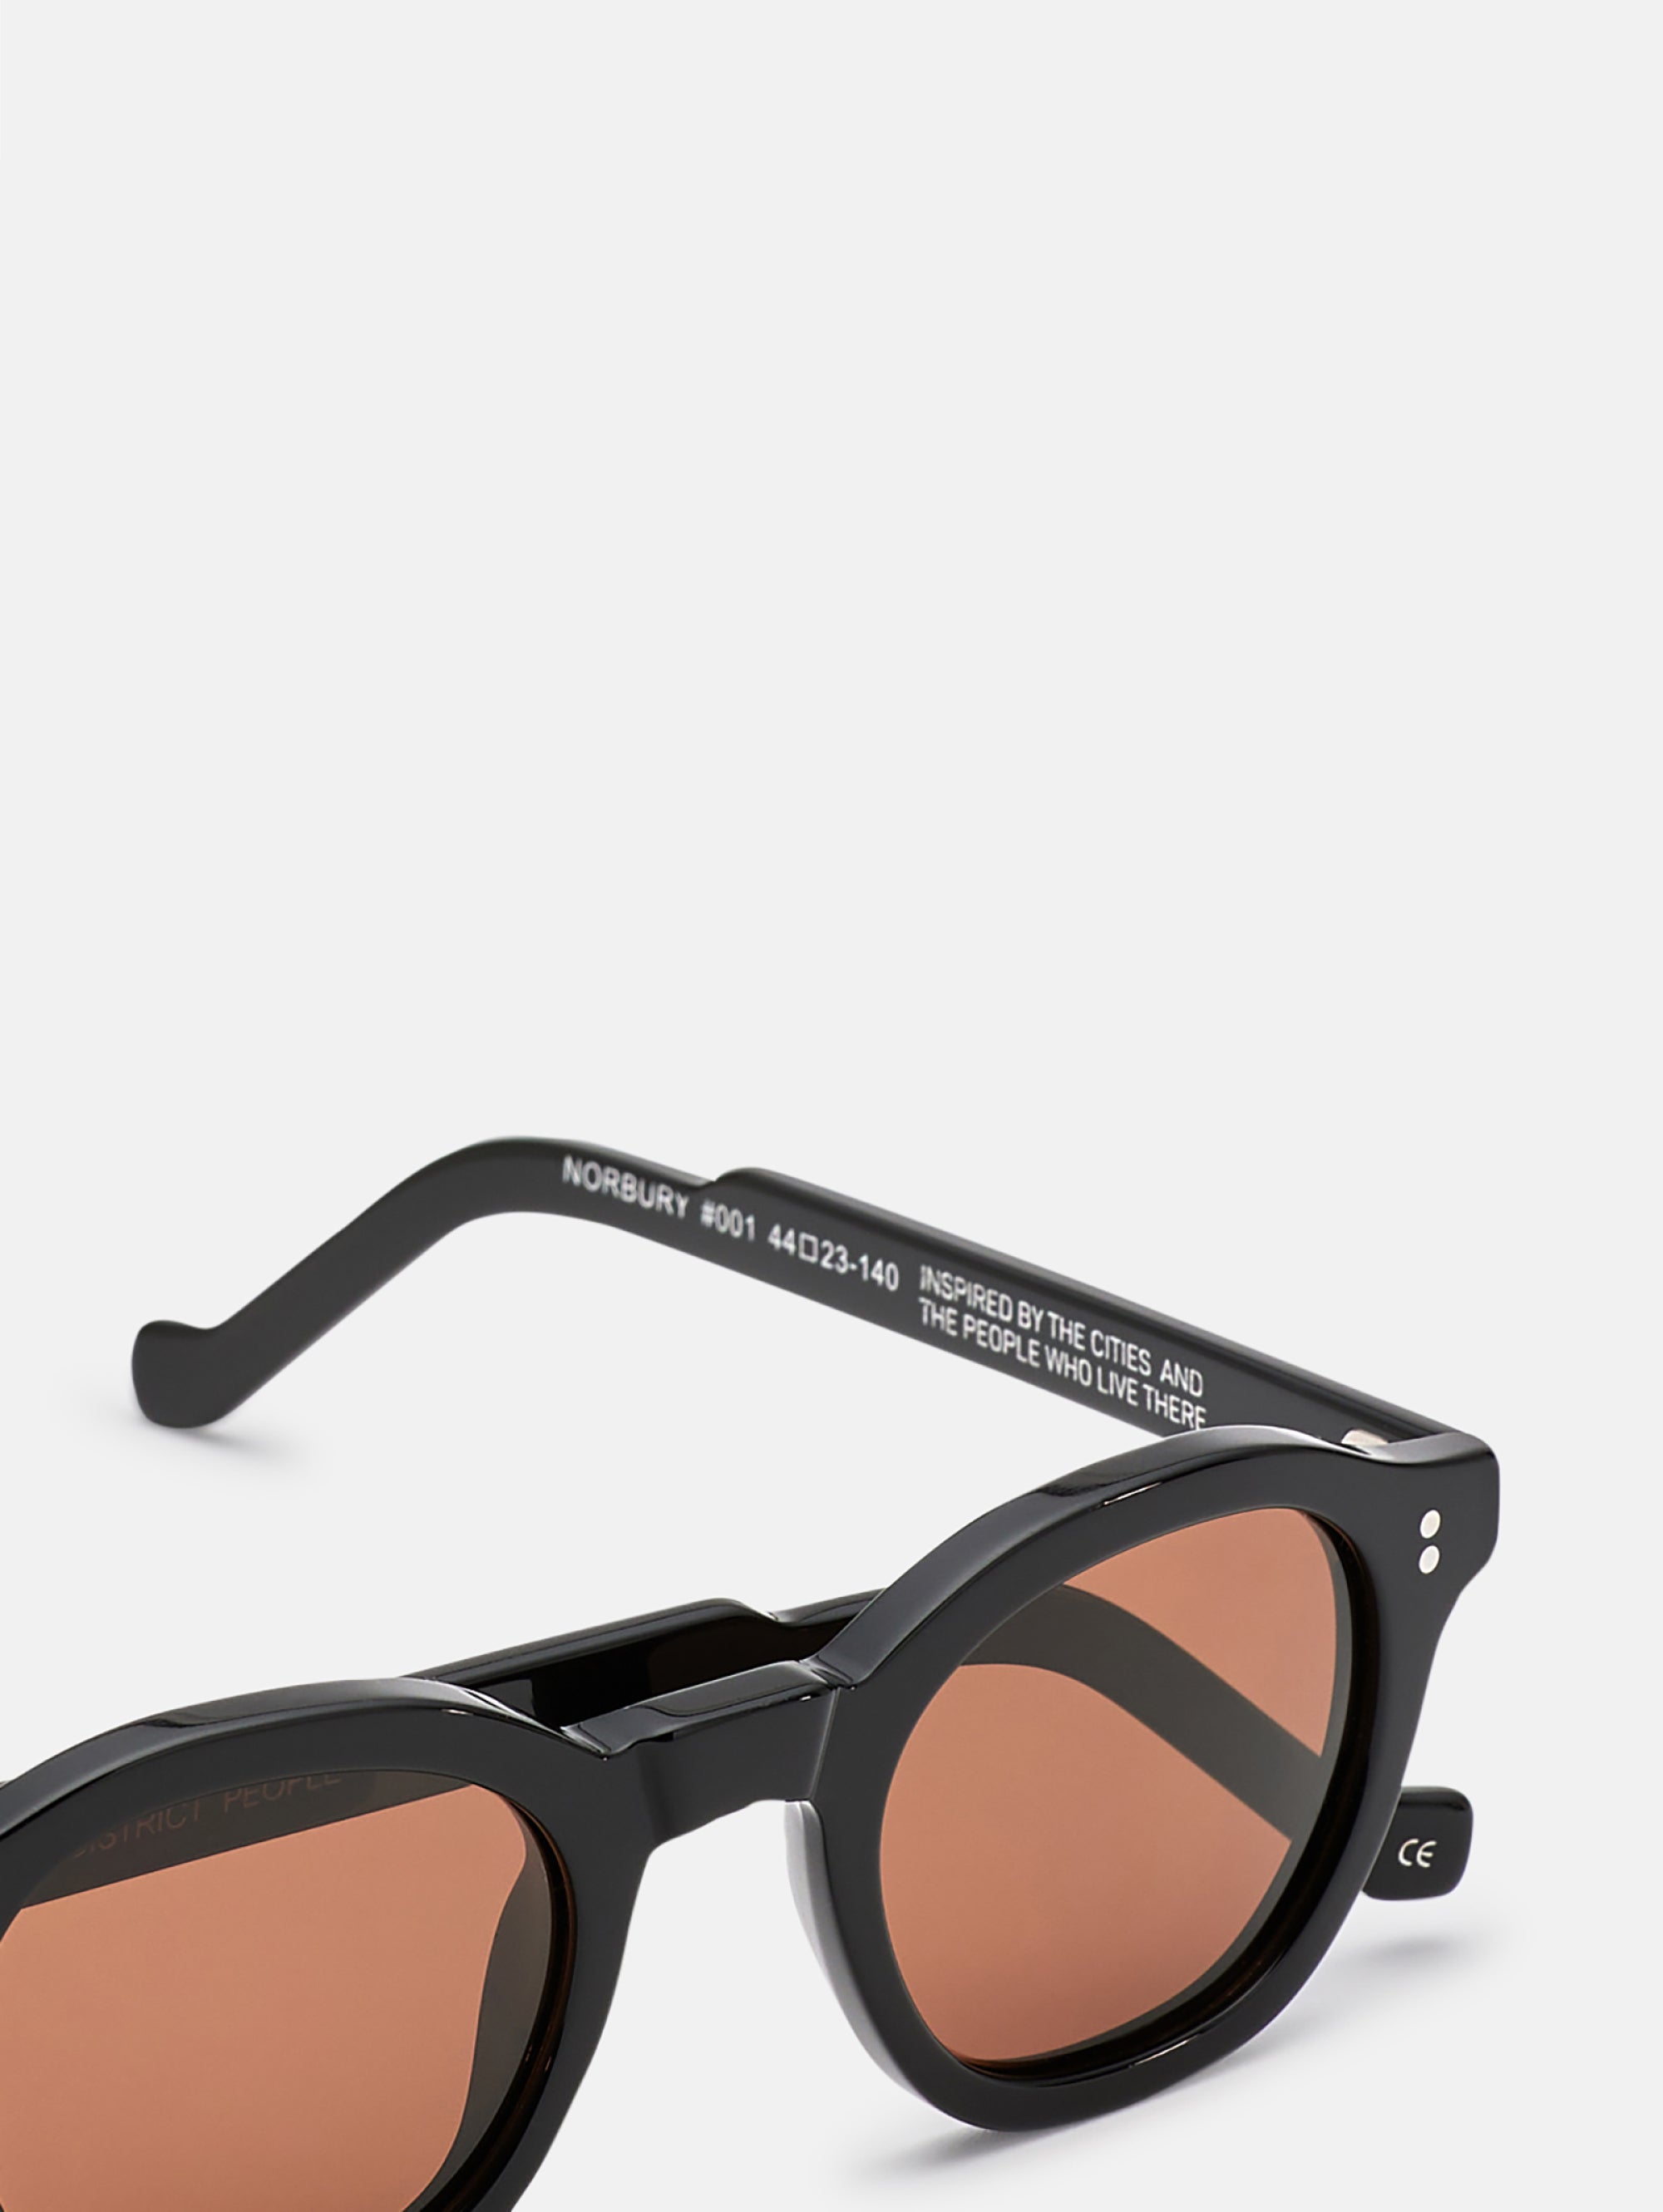 Norbury Sunglasses Black/Brown